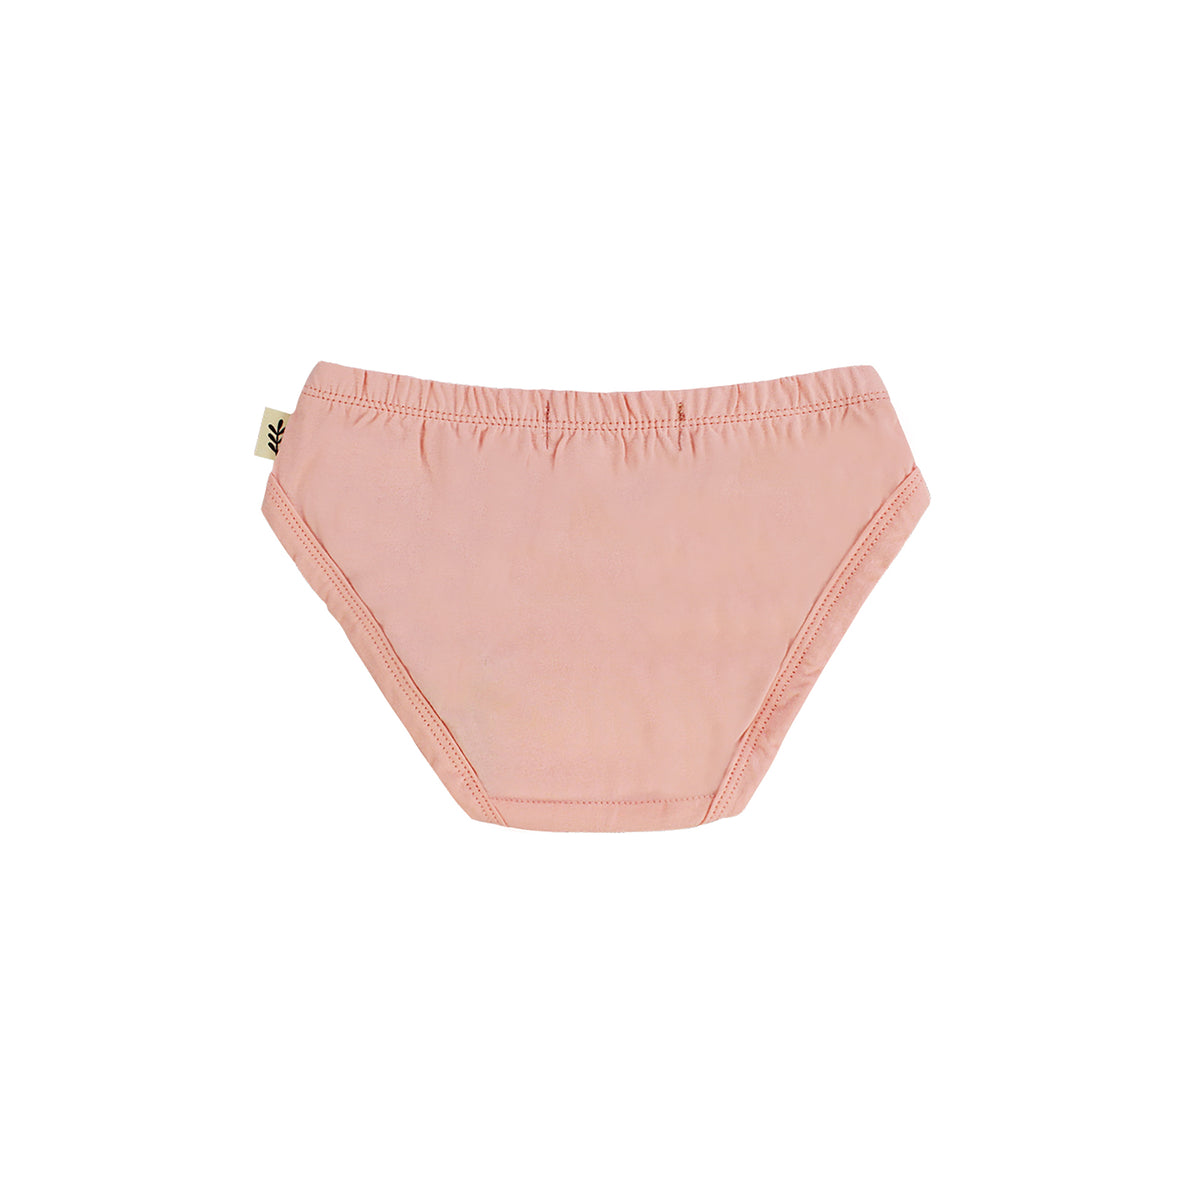 Organic-cotton/hemp Cheeky Undies, Blush-pink Avocado Pit Dye, Ladies  Underwear 